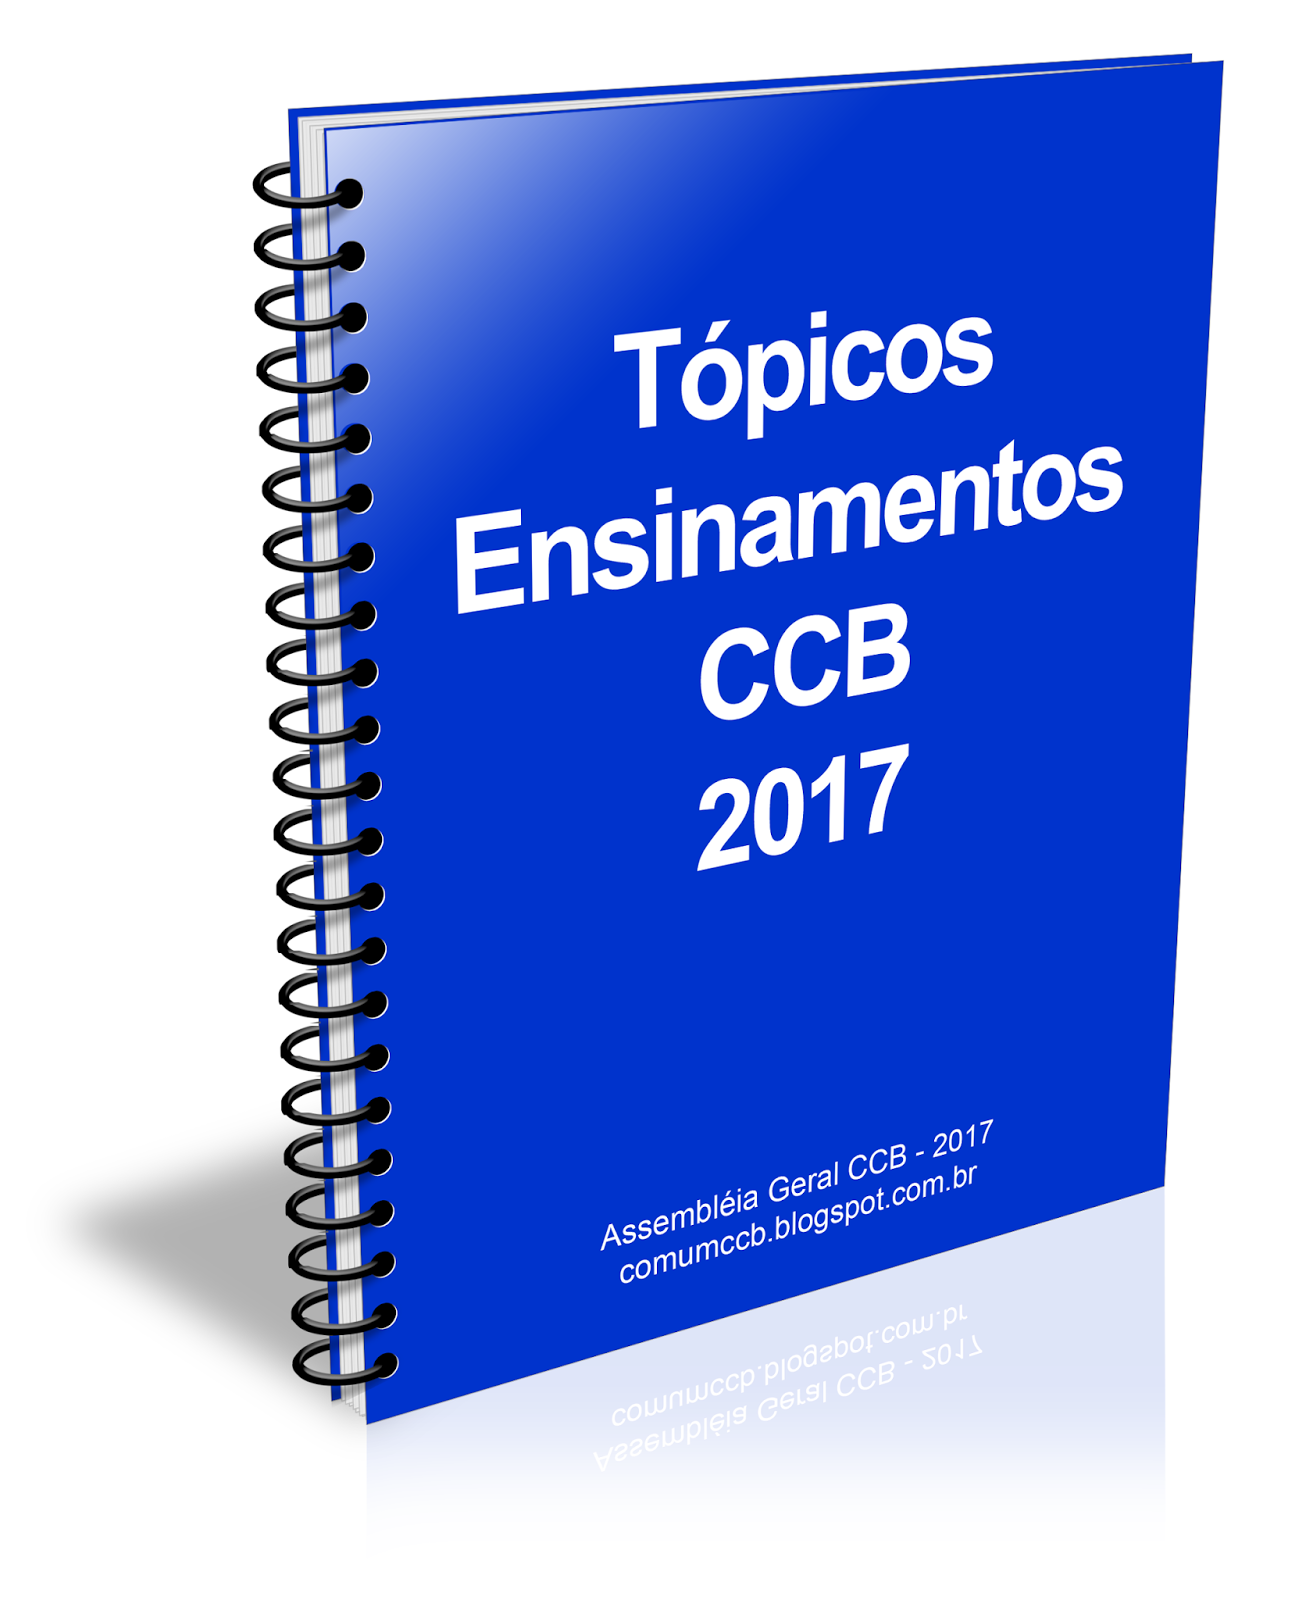 Tópicos de Ensinamentos da CCB de 2.017. Topicos2017